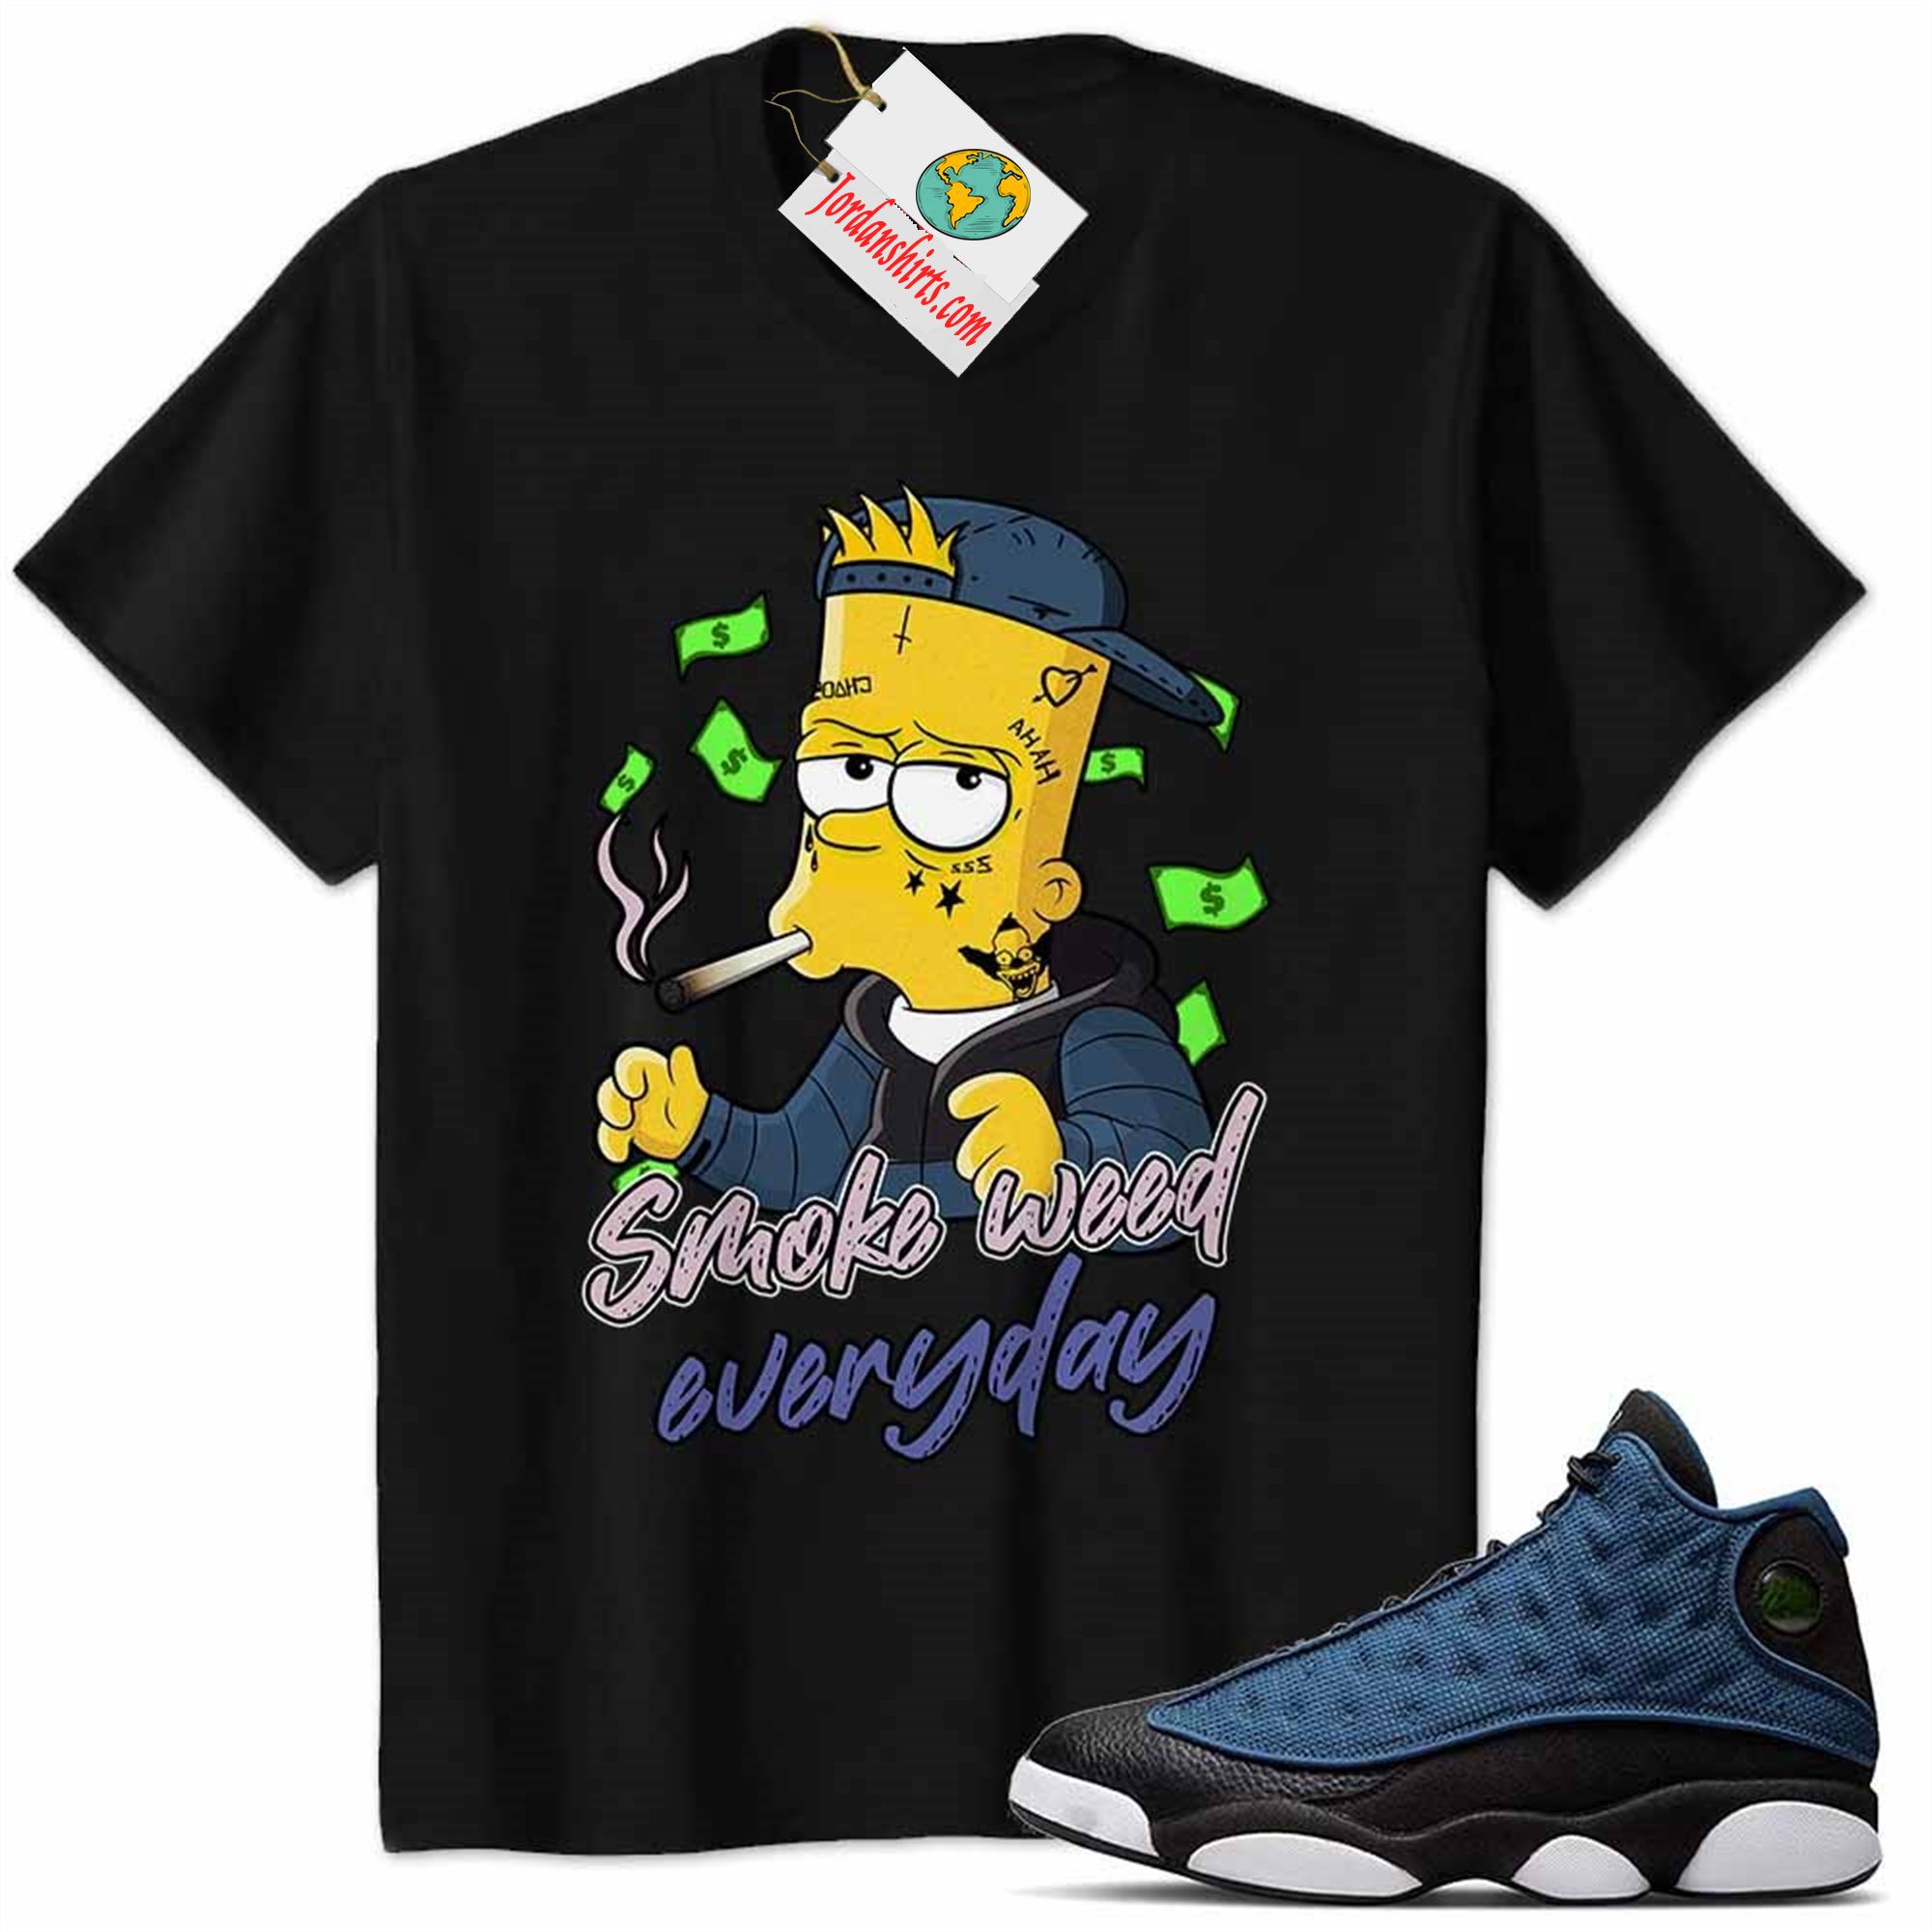 Jordan 13 Shirt, Jordan 13 Brave Blue Shirt Bart Simpson Smoke Weed Everyday Black Size Up To 5xl